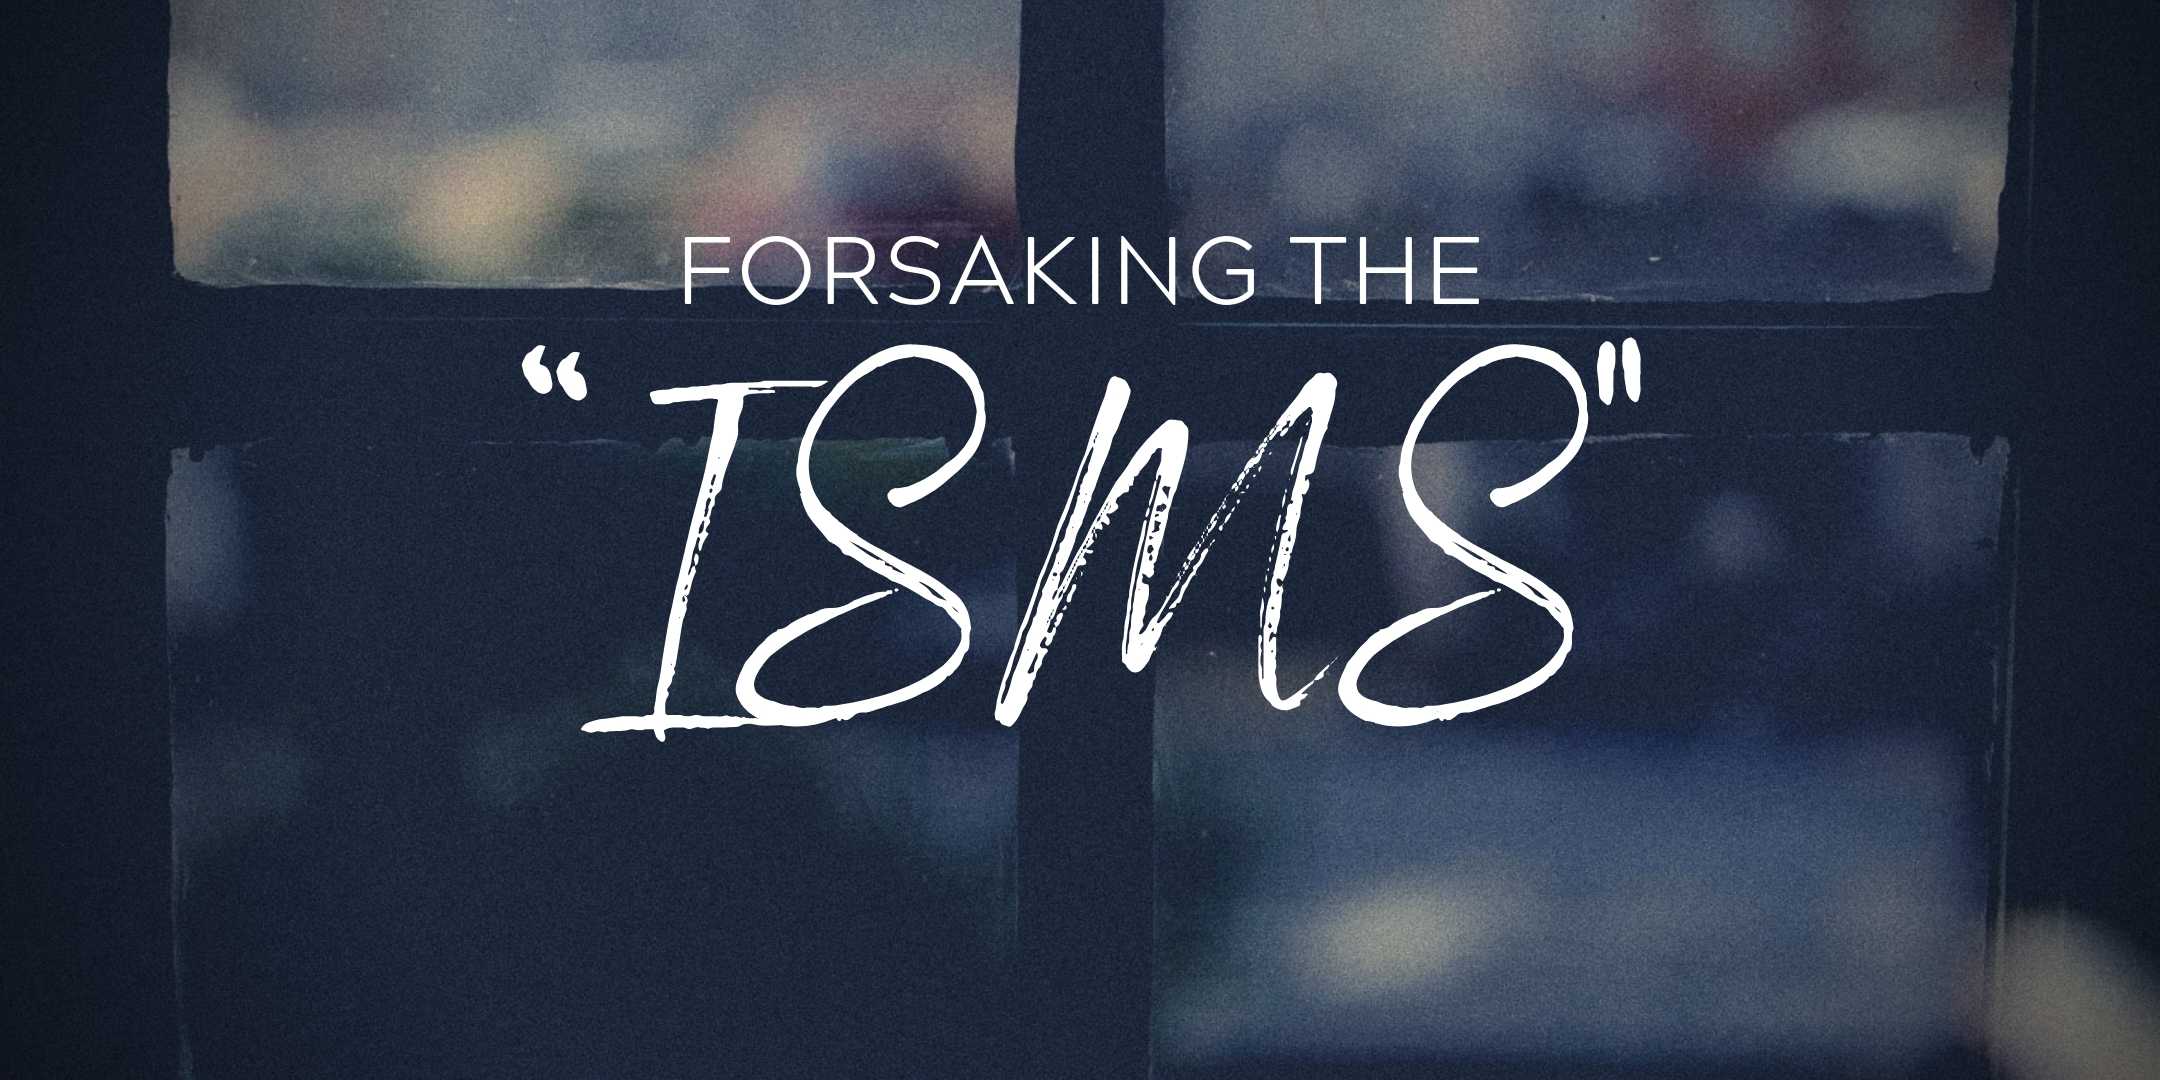 Forsaking the “Isms”